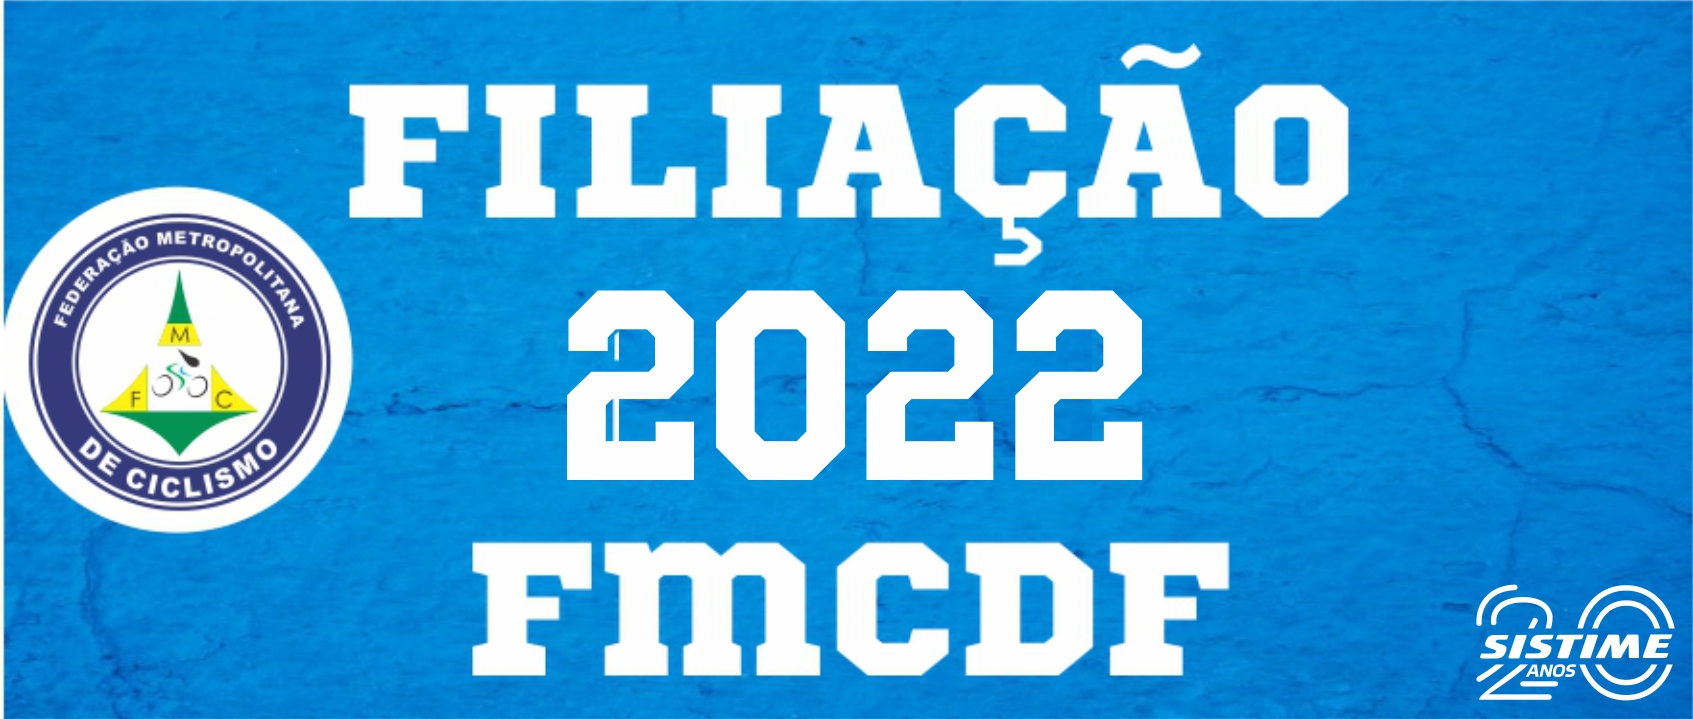 filiacao-federacao-metropolitana-2022